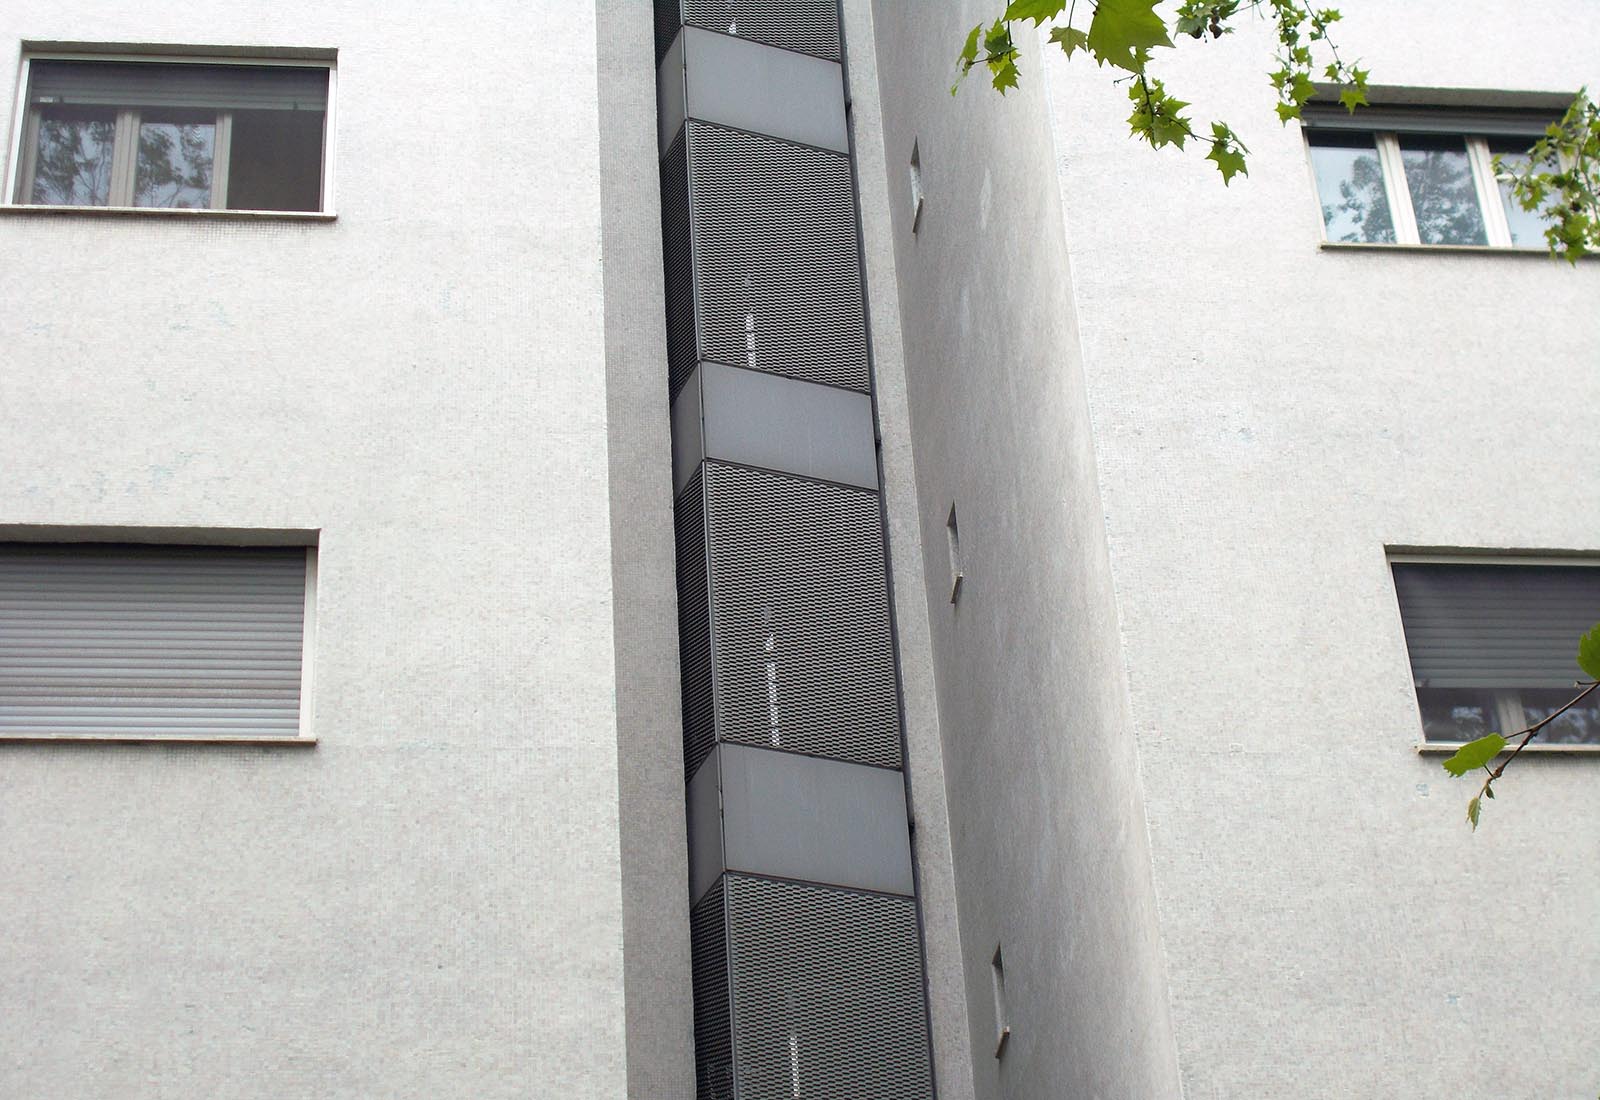 Residenza universitaria di via Corridoni - Dettaglio del nuovo collegamento tra le torri